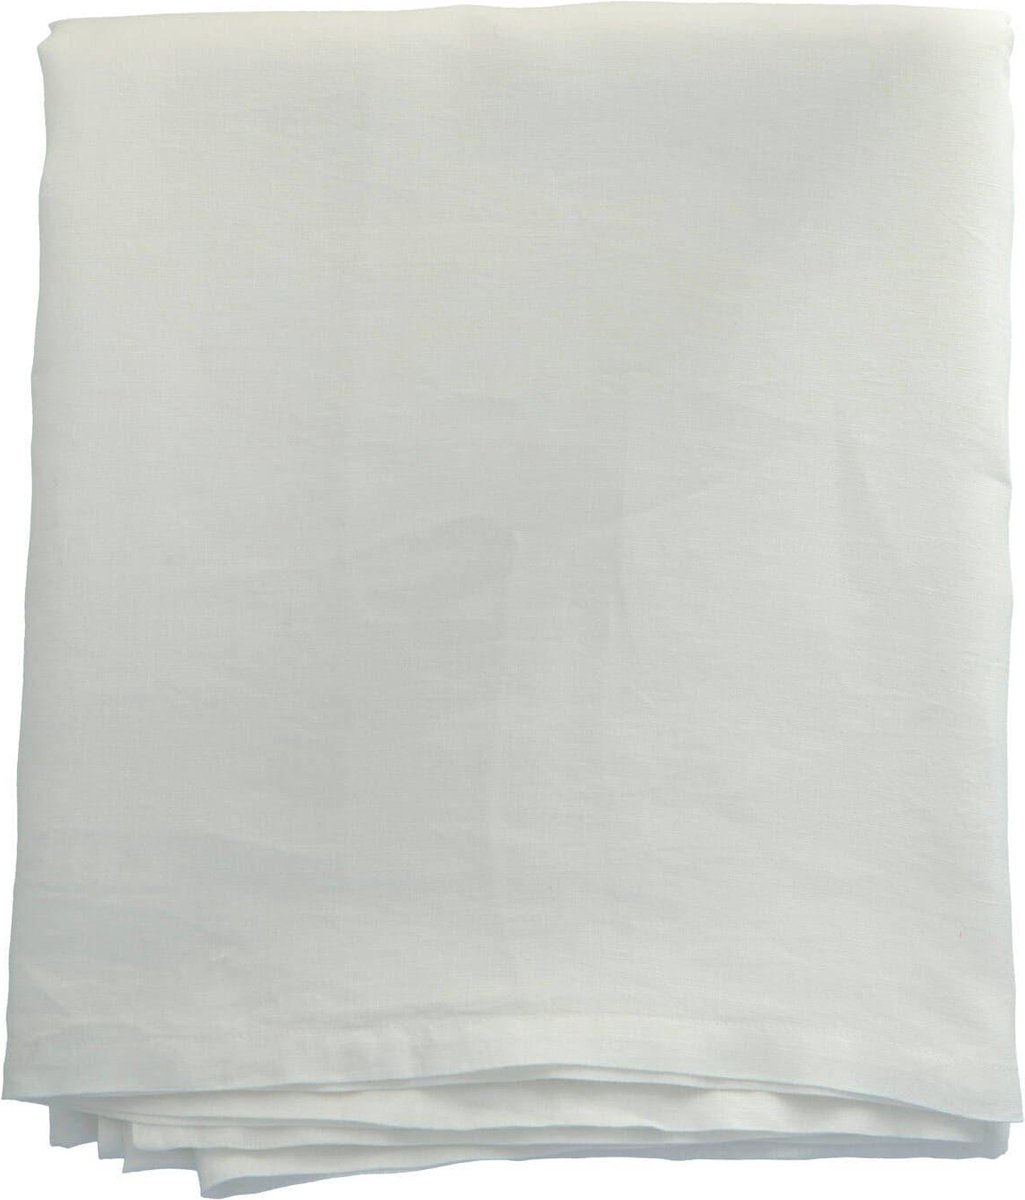 Tell me More - Tafellaken linnen bleached white 160x270cm - Tafellakens